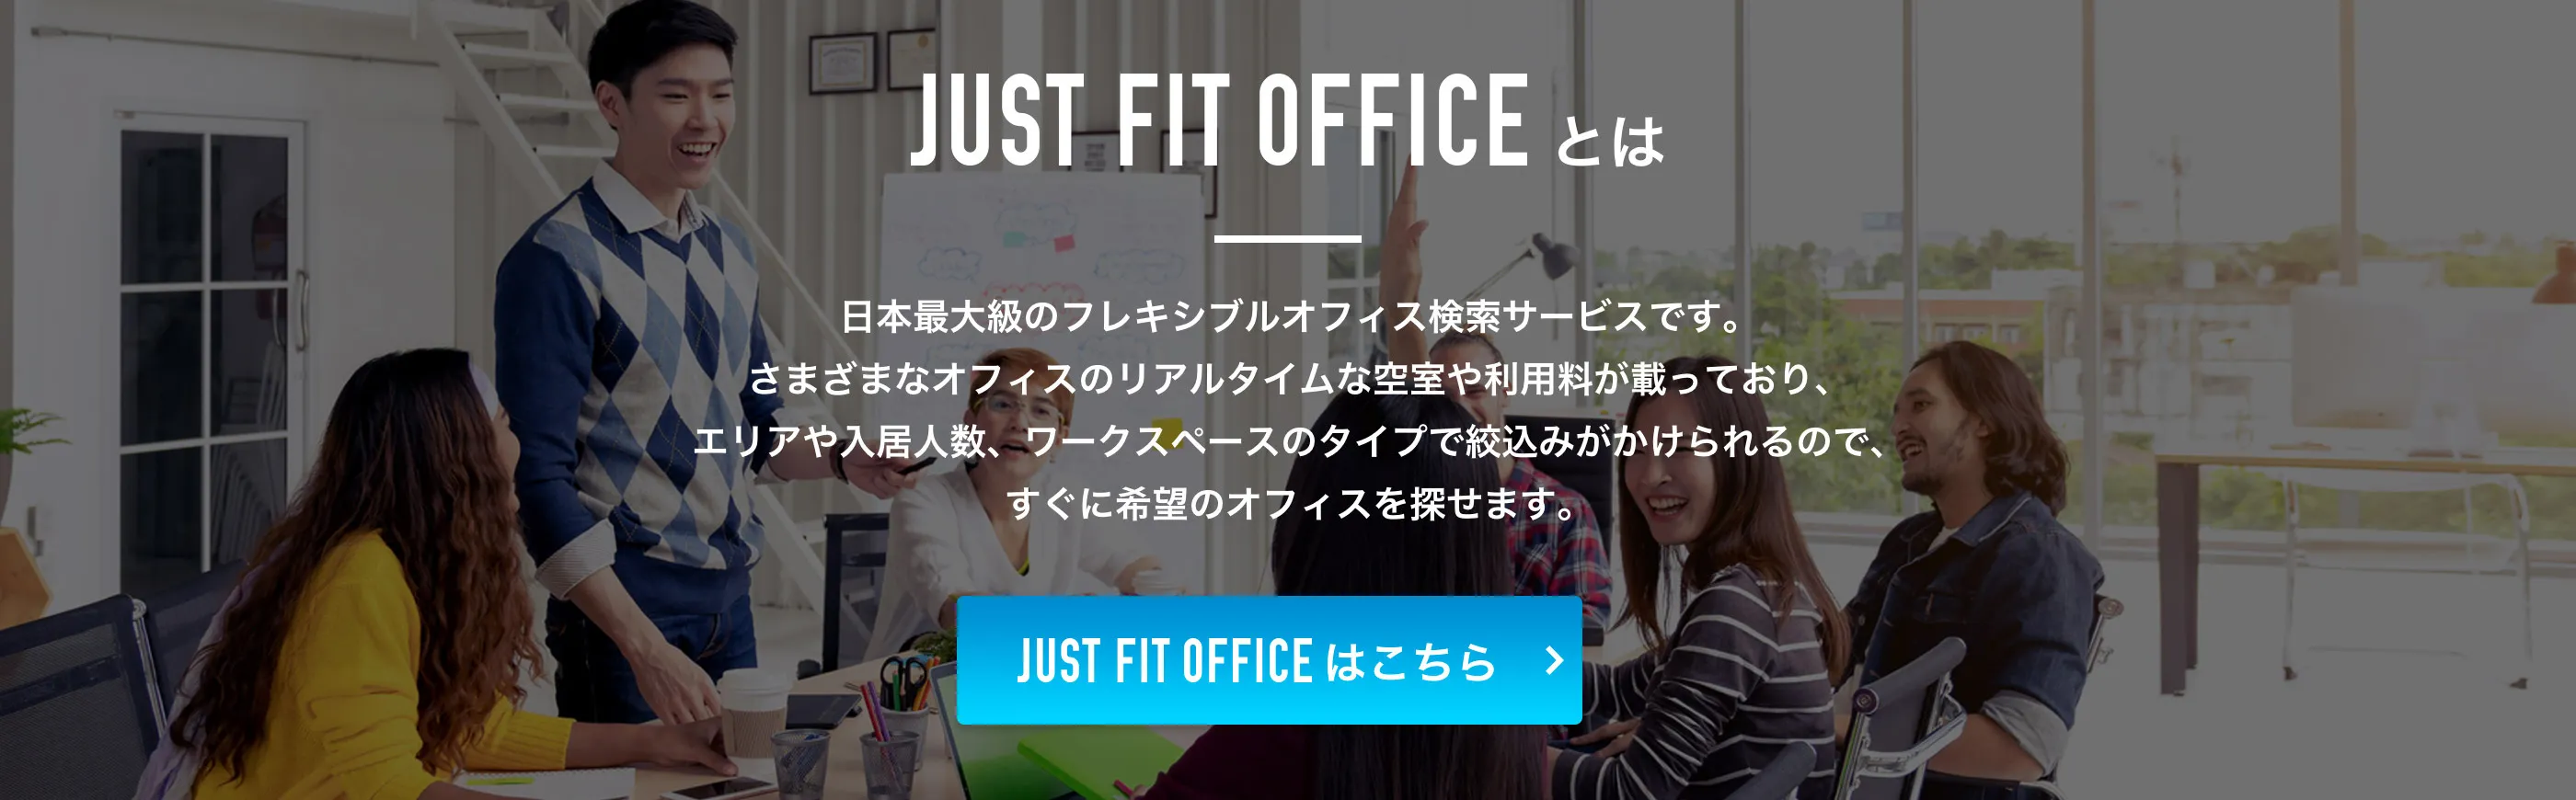 JUST FIT OFFICEとは、日本最大級のフレキシブルオフィス検索サービスです。さまざまなオフィスのリアルタイムな空室や利用料が載っており、エリアや入居人数、ワークスペースのタイプで絞込みがかけられるので、すぐに希望のオフィスを探せます。